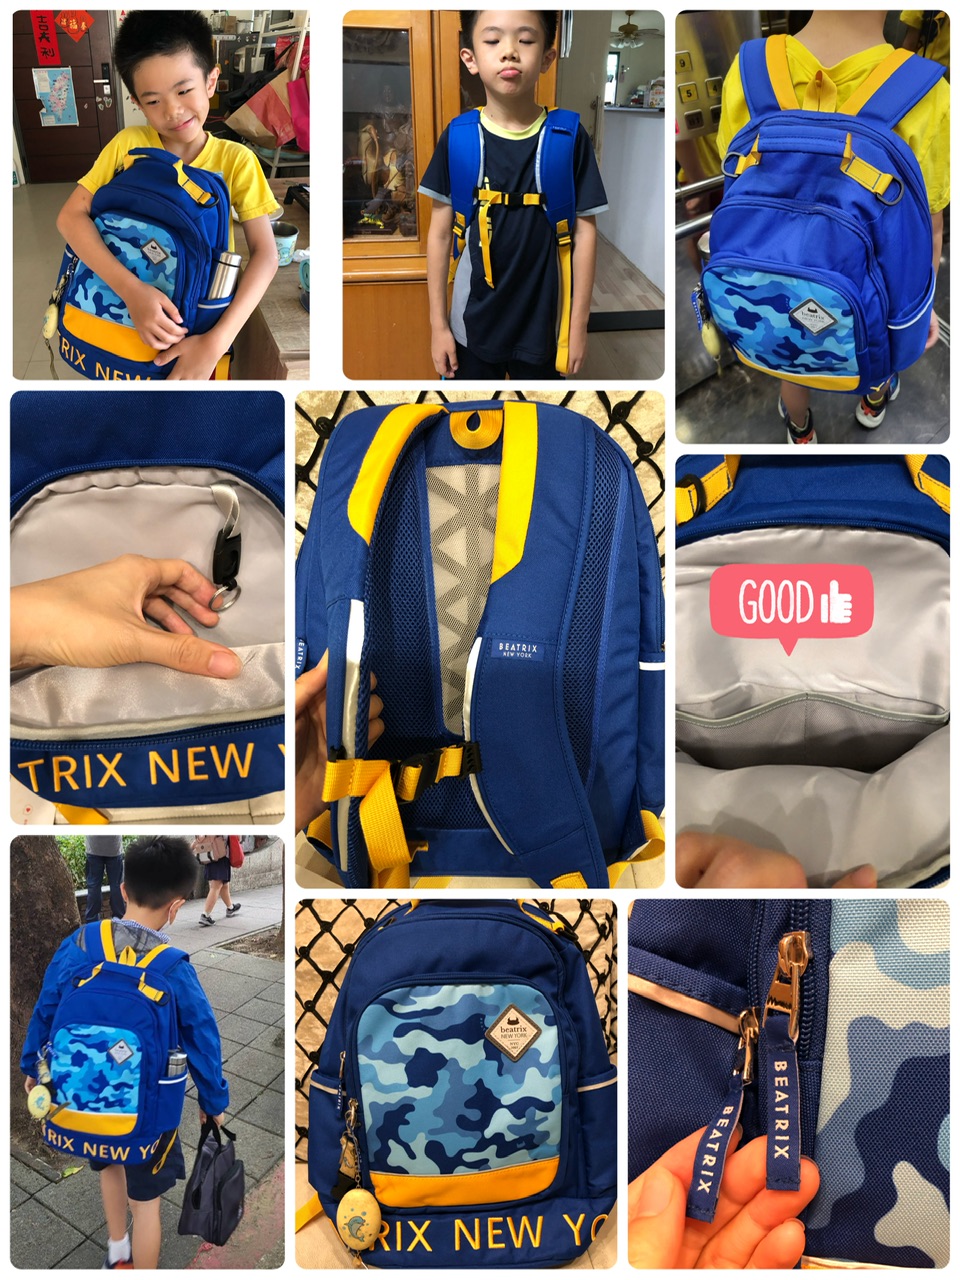 國小生喜愛的美國BEATRIX NEW YORK培趣思美式休閒迷彩藍防潑水護脊透氣書包時尚簡約、輕便安全又童趣